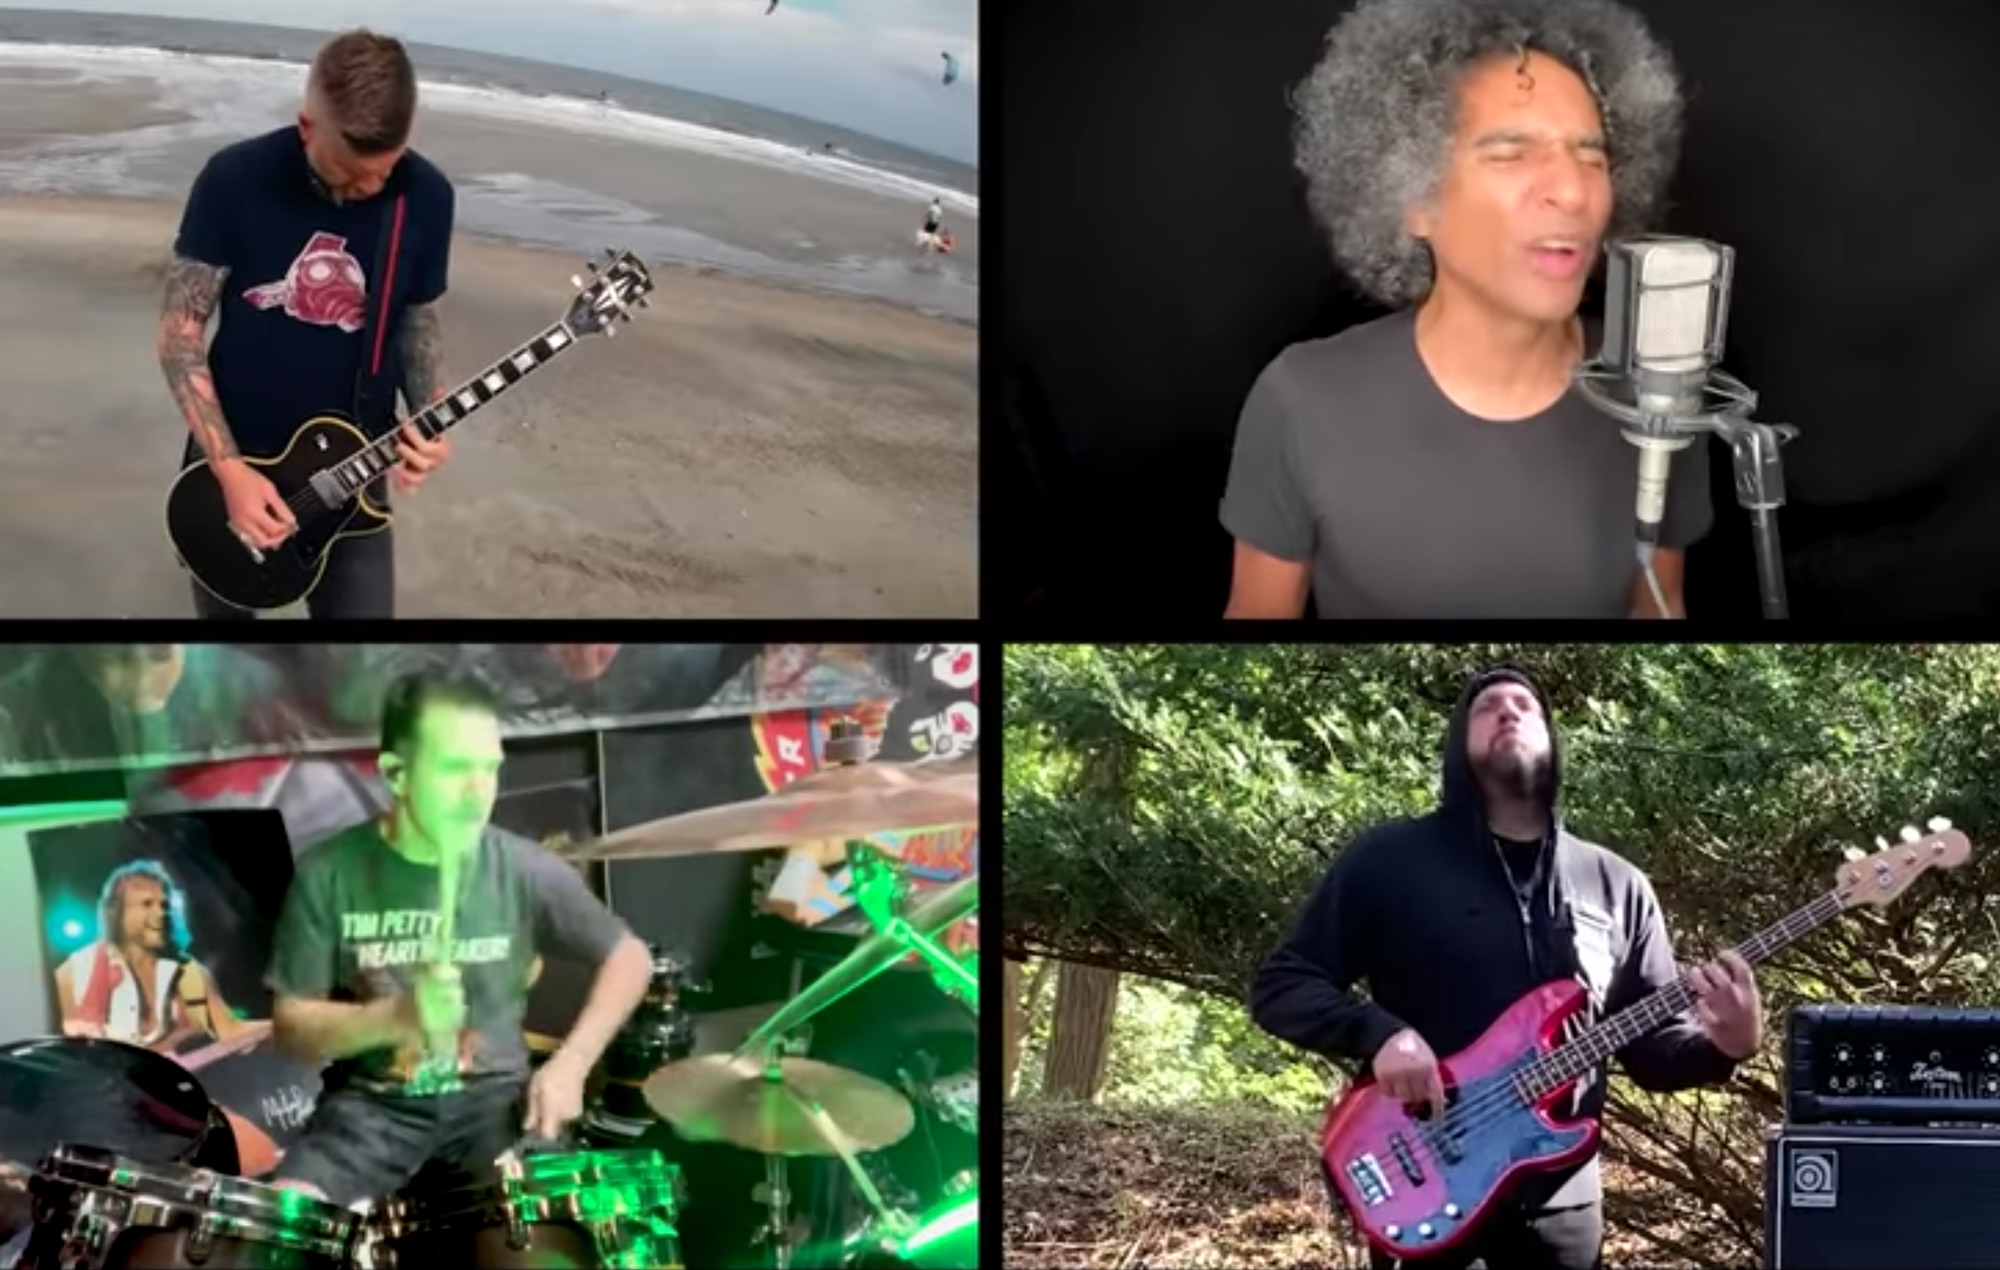 Los miembros de Anthrax, Mastodon y más rinden homenaje a Chris Cornell con la portada de Soundgarden